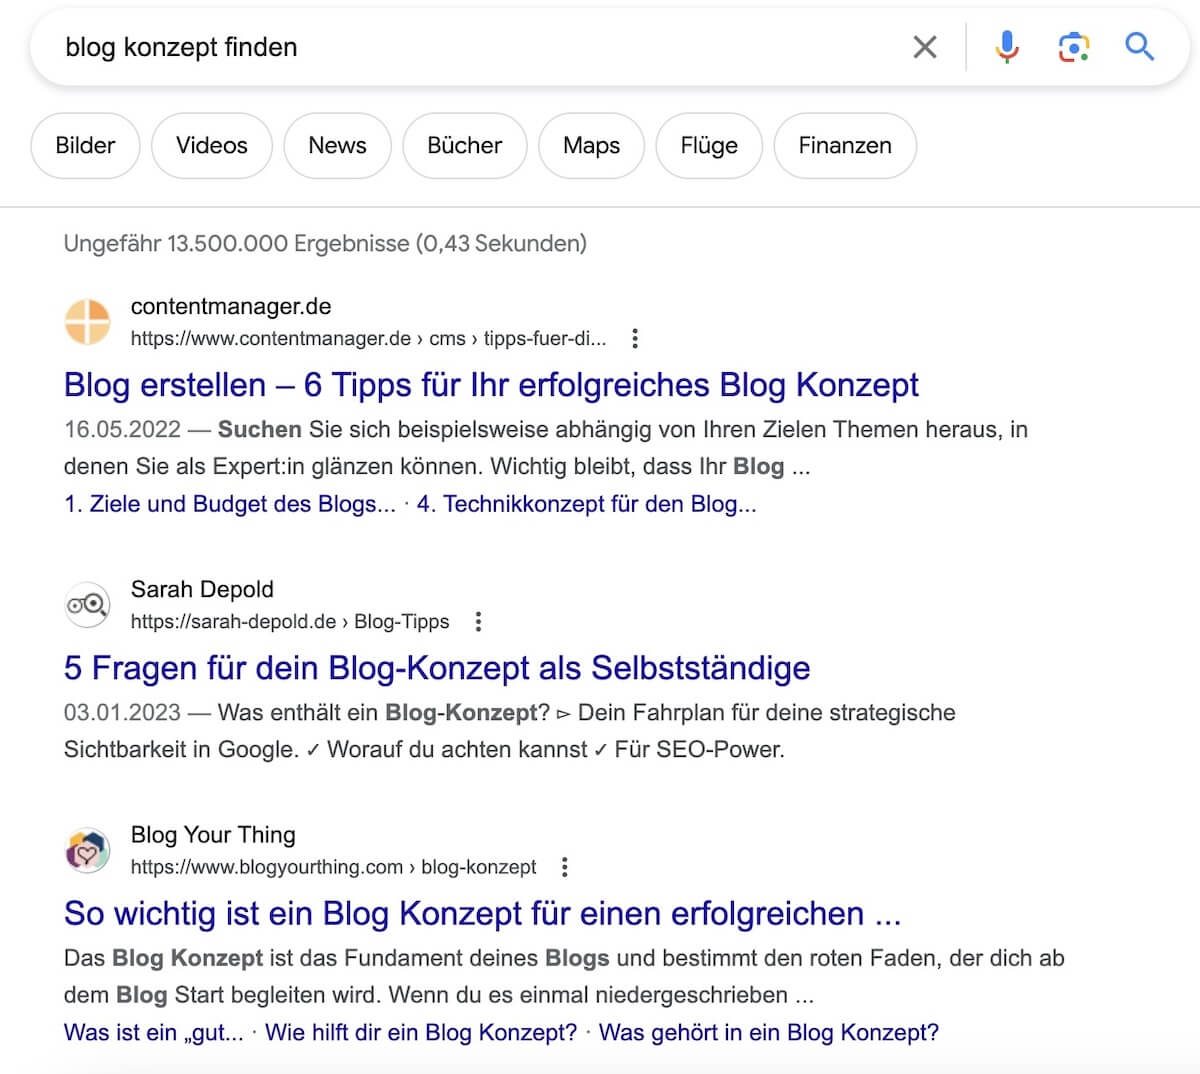 Suchergebnis zum Blog-Konzept: Top 3 Ergebnisse sind Expertinnen + Agentur, kein Bauchladen! - sarah-depold.de